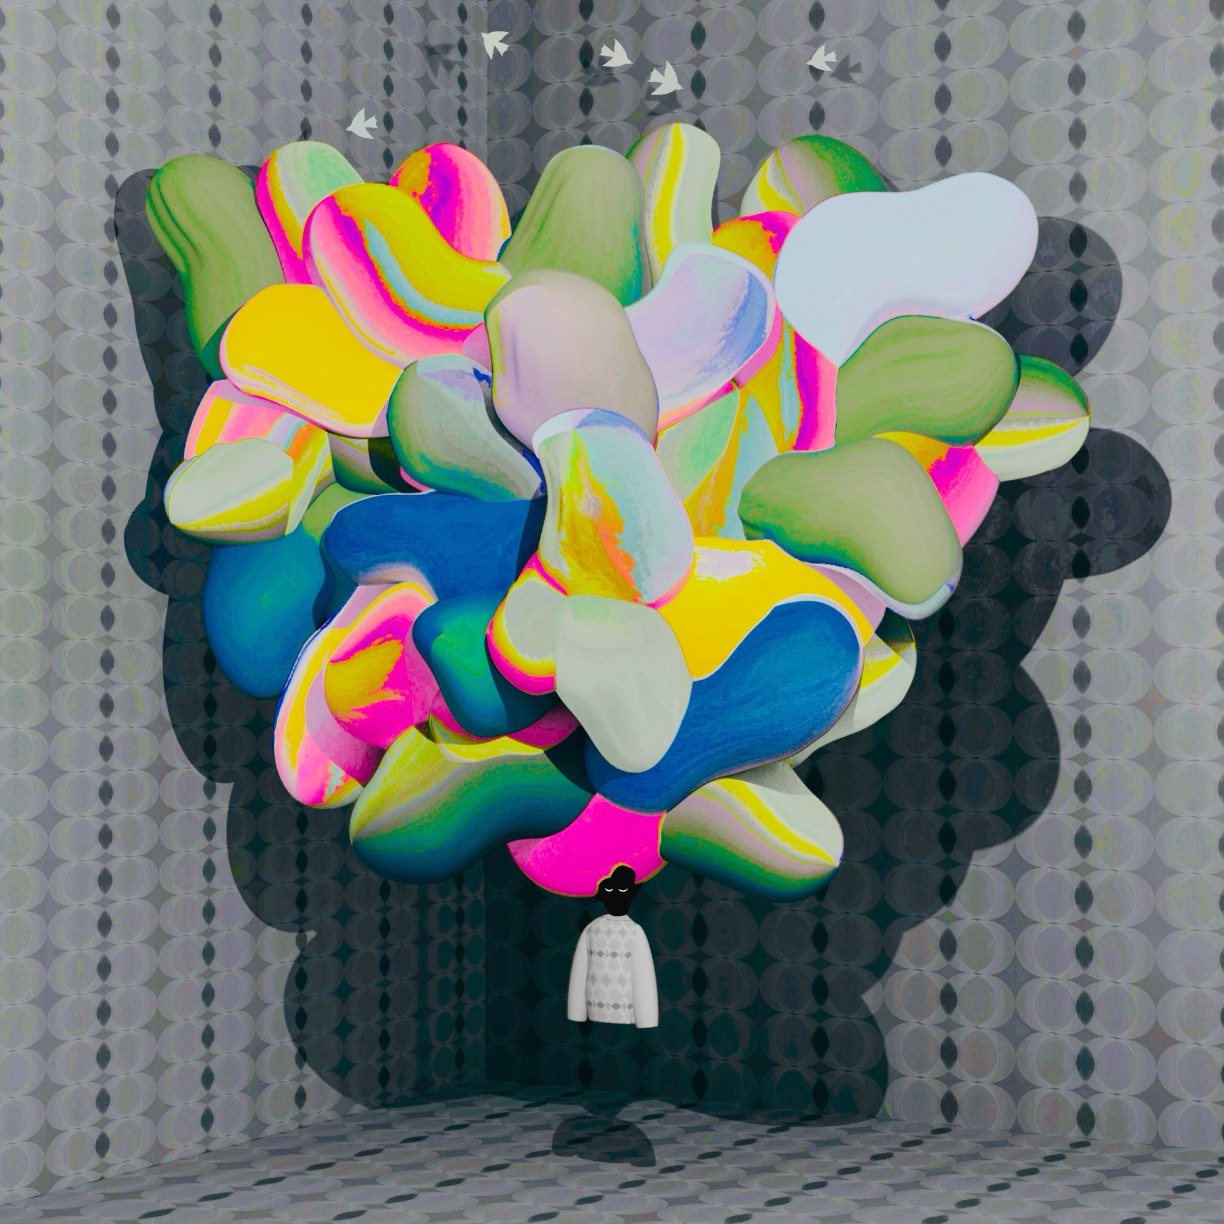 Atsushigraphのデジタルアート作品「Brain Remix」の画像です。